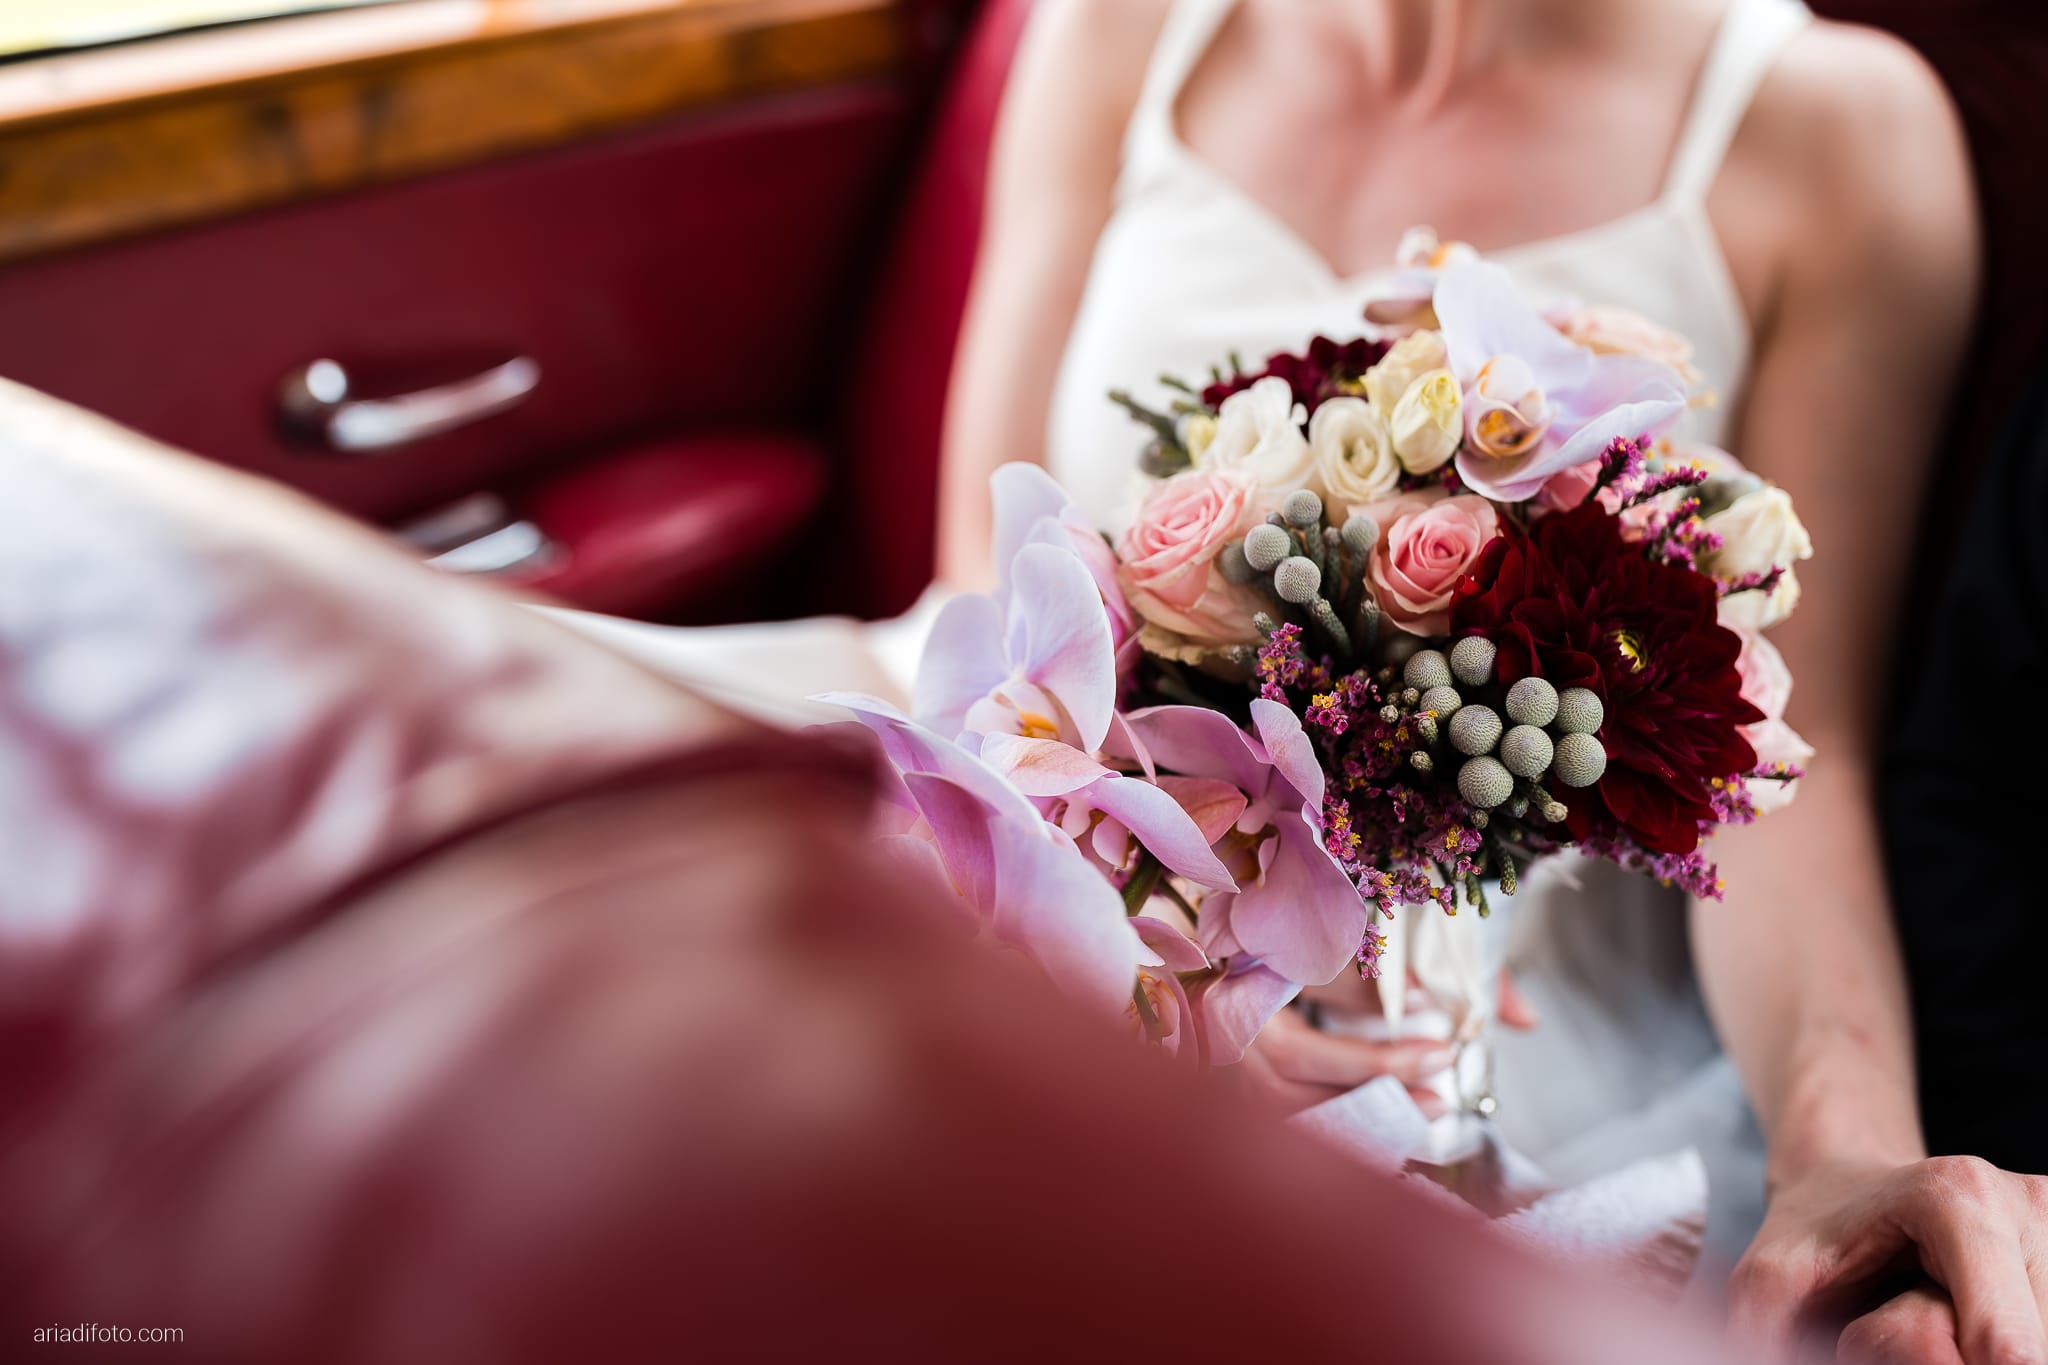 Lauren Michele Matrimonio Destination Wedding Udine preparativi sposa dettagli bouquet